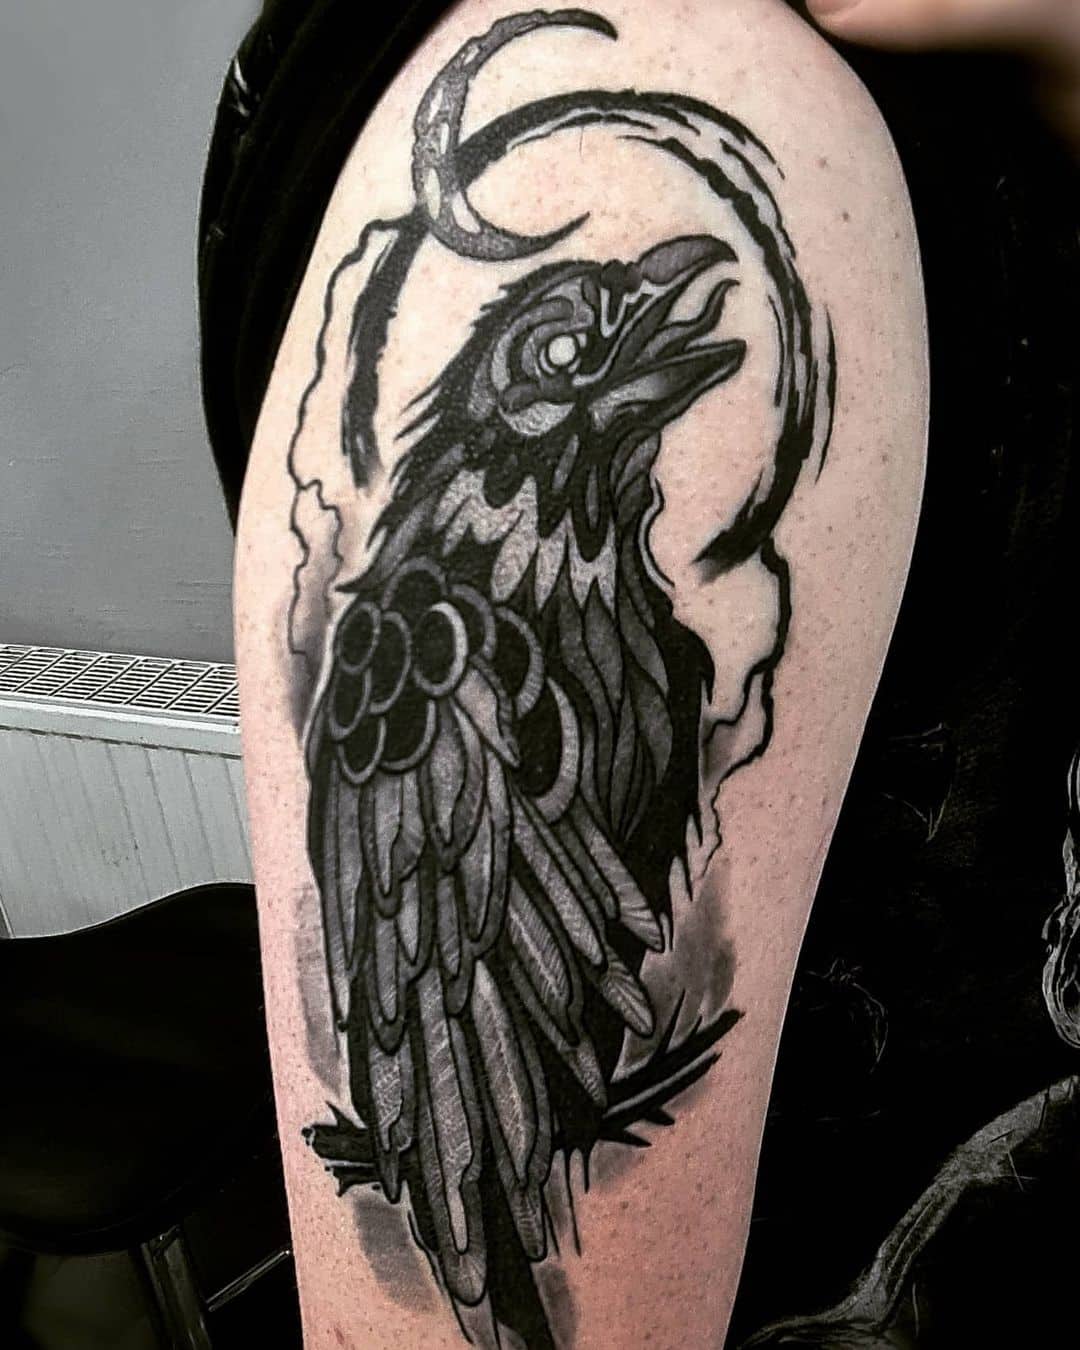 Raven Tattoo Shoulder Piece In Black Color